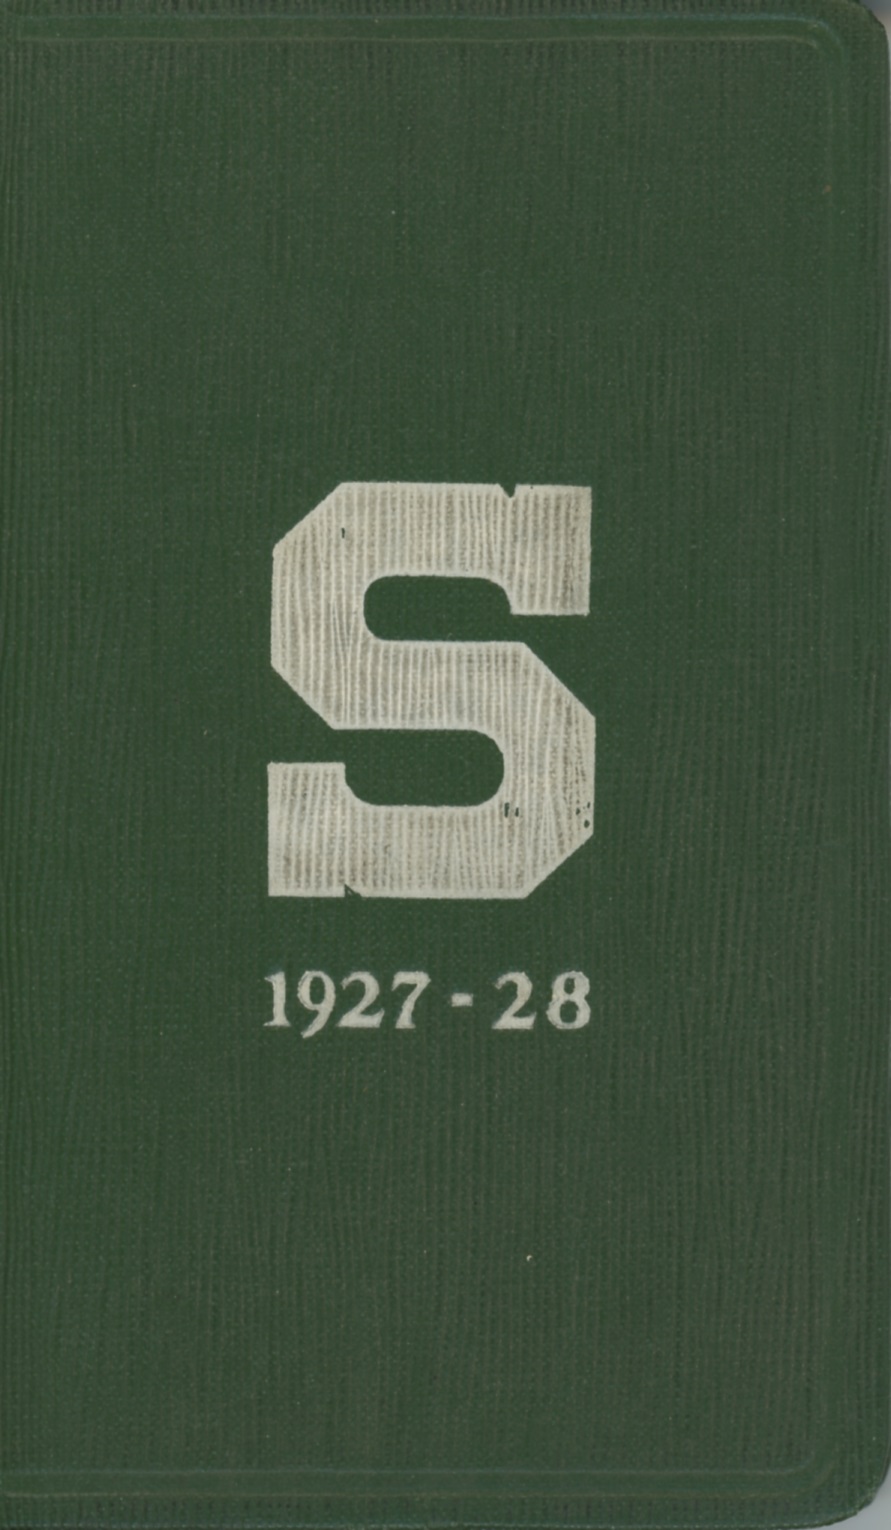 Student Handbook, 1927-1928